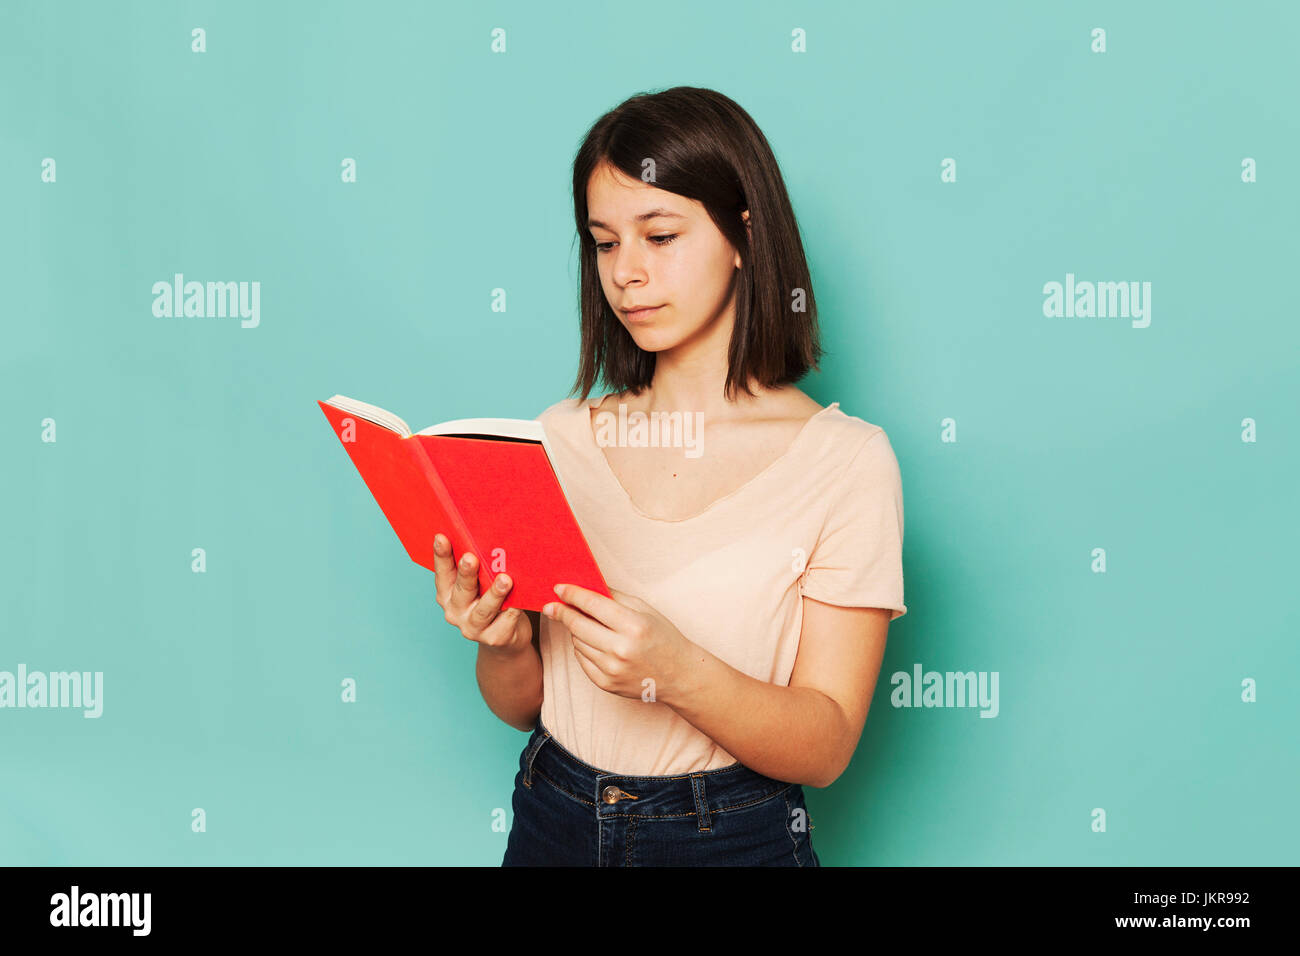 Girl reading novel against turquoise background Stock Photo